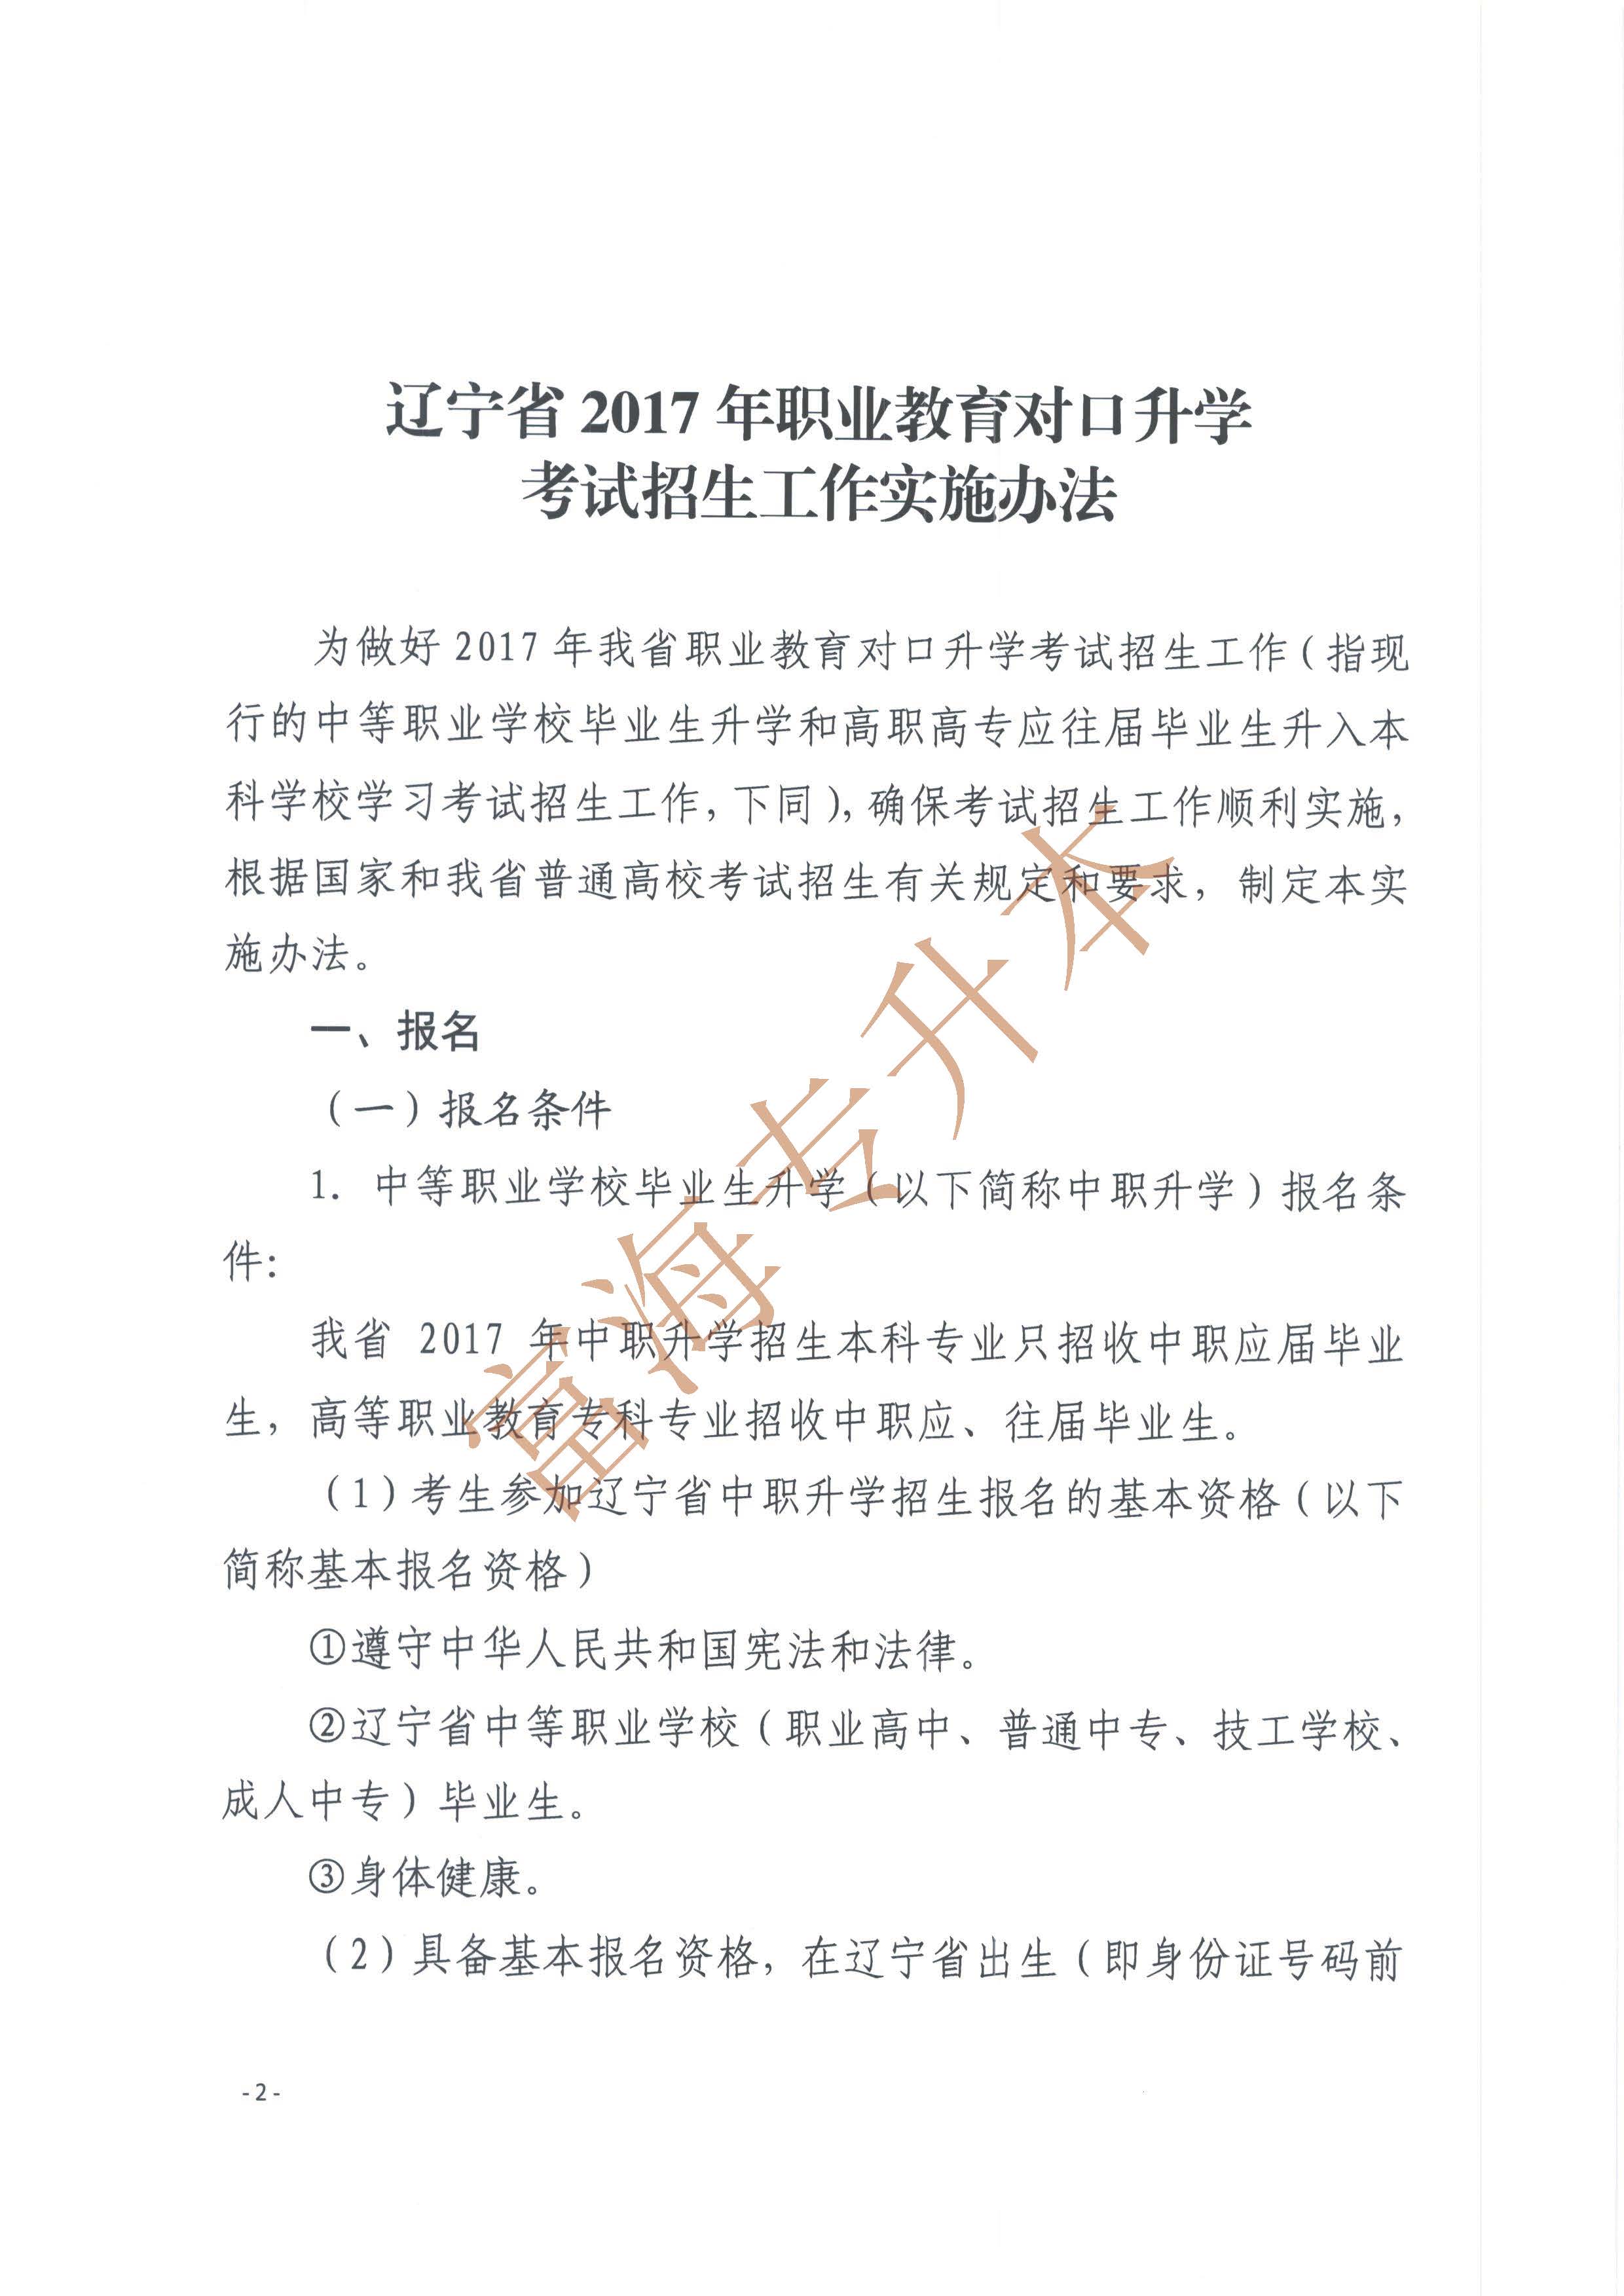 辽宁省2017年职业教育对口升学考试招生工作实施办法的通知2